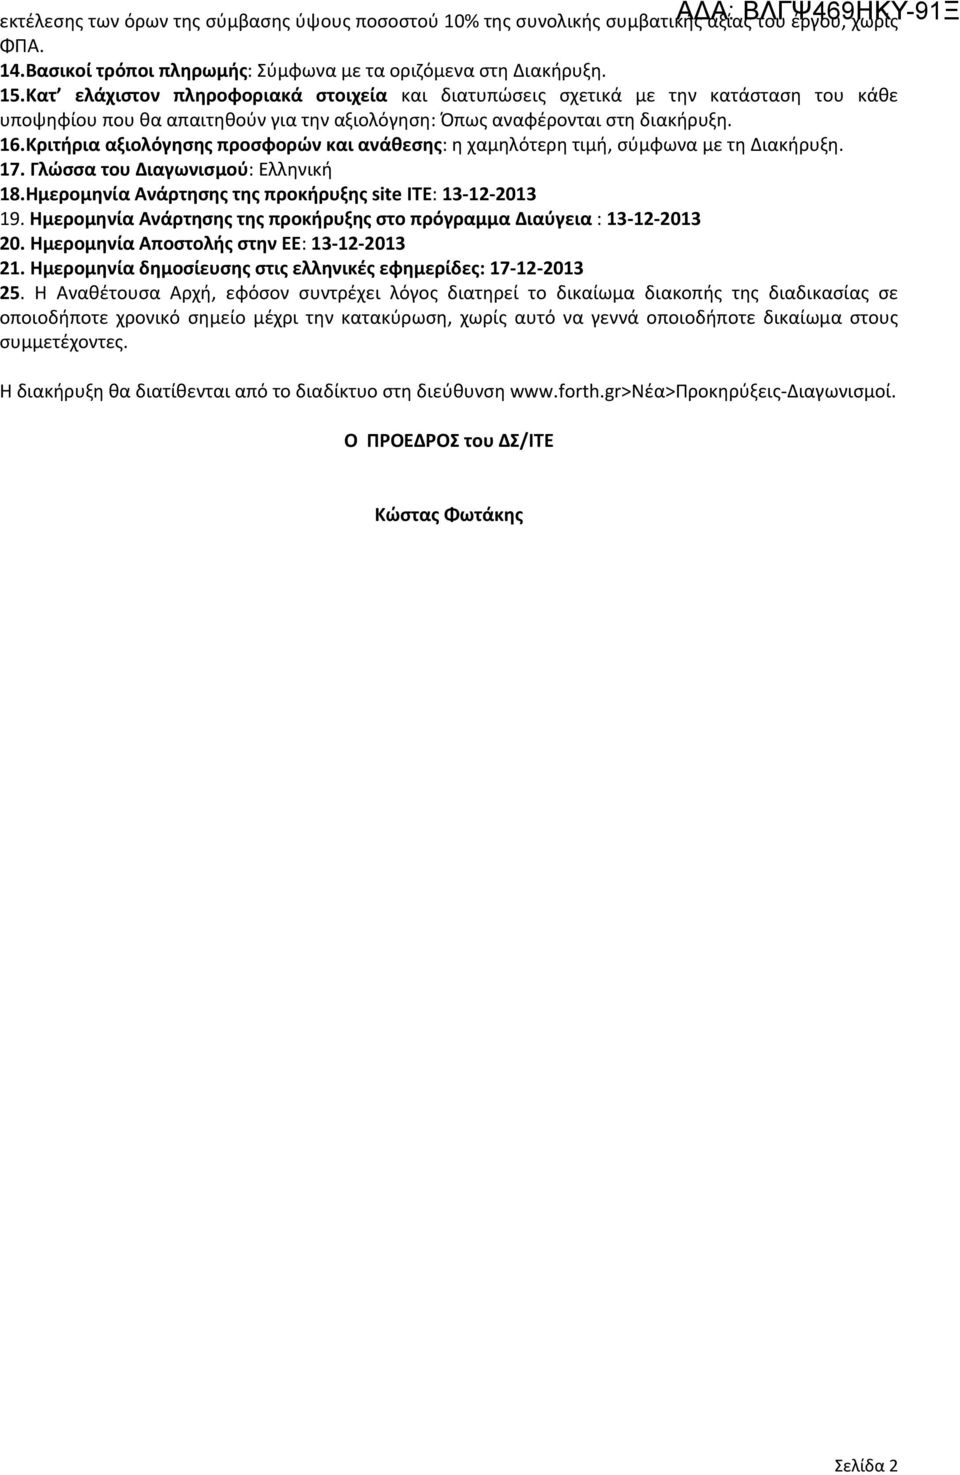 Κριτήρια αξιολόγησης προσφορών και ανάθεσης: η χαμηλότερη τιμή, σύμφωνα με τη Διακήρυξη. 17. Γλώσσα του Διαγωνισμού: Ελληνική 18.Ημερομηνία Ανάρτησης της προκήρυξης site ΙΤΕ: 13 12 2013 19.